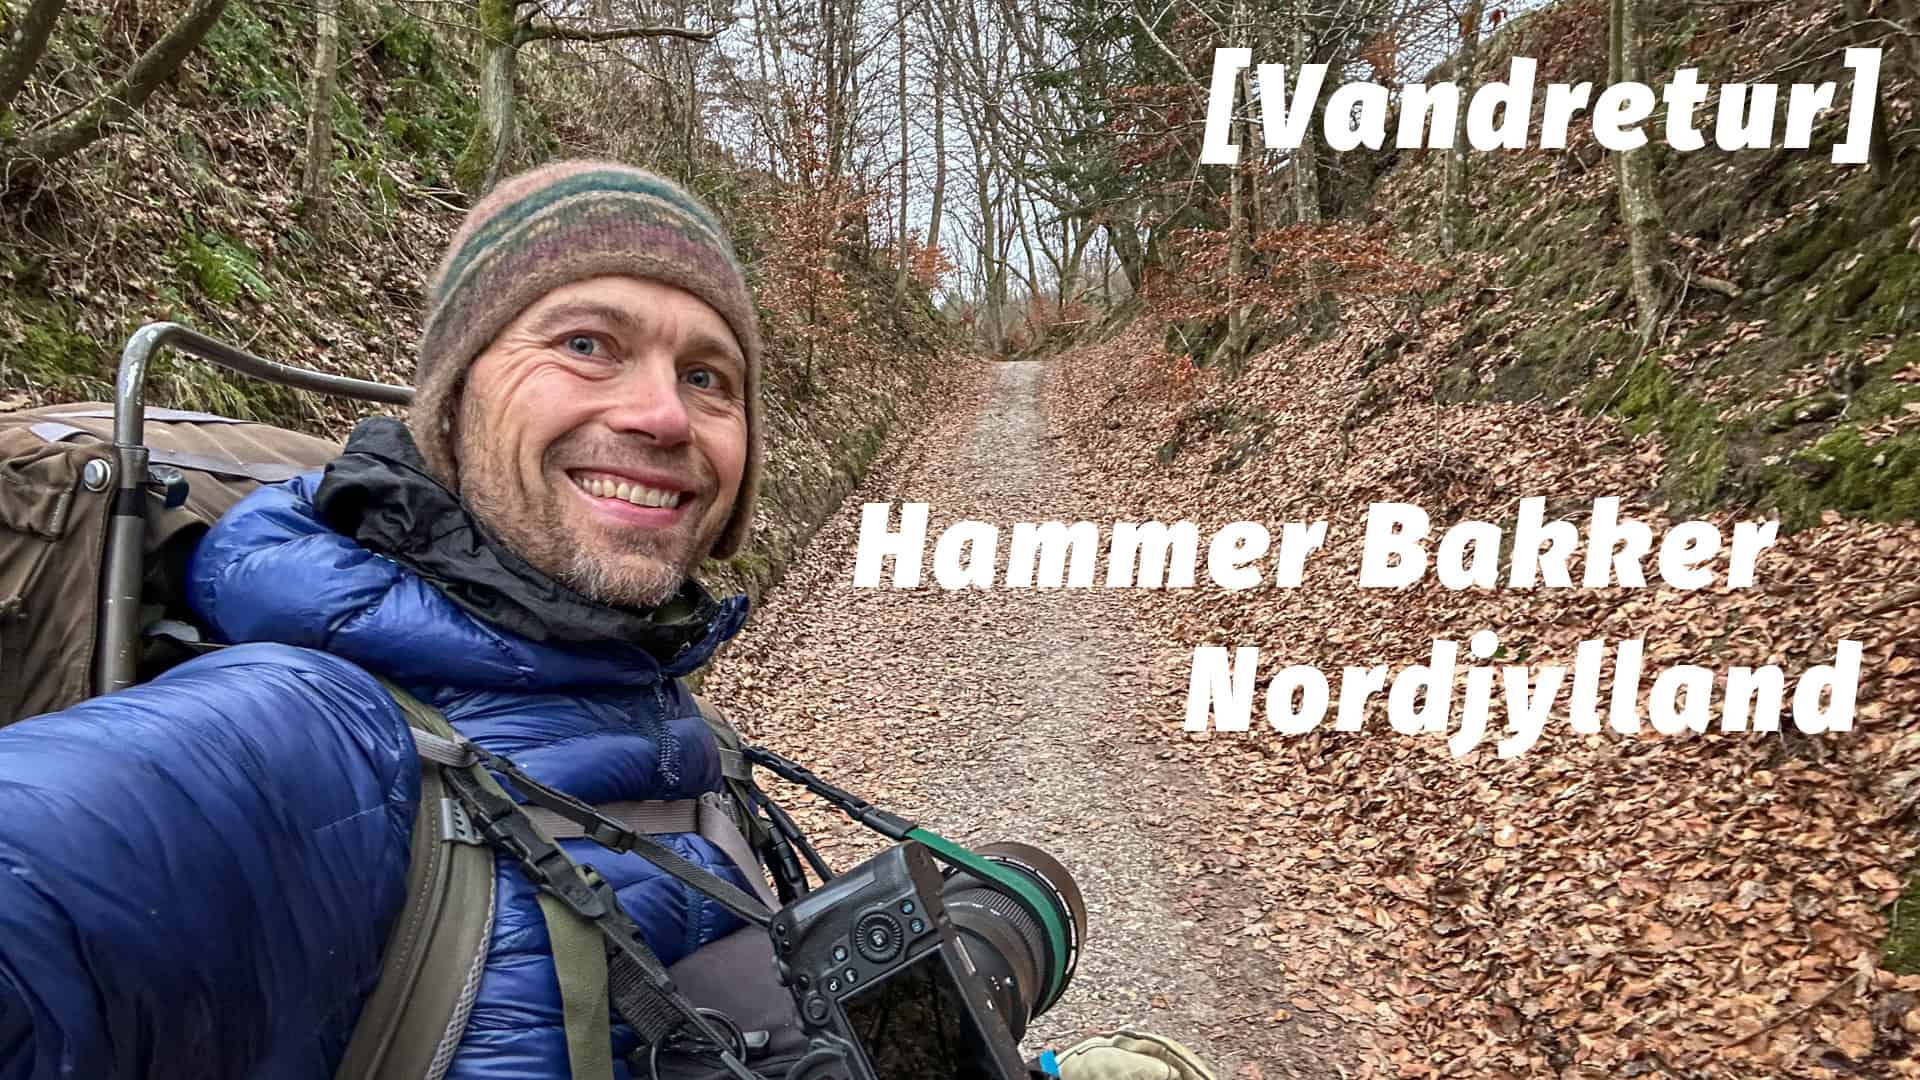 Vandretur, Hammer Bakker, Nordjylland [Mikroeventyr] med Erik B. Jørgensen